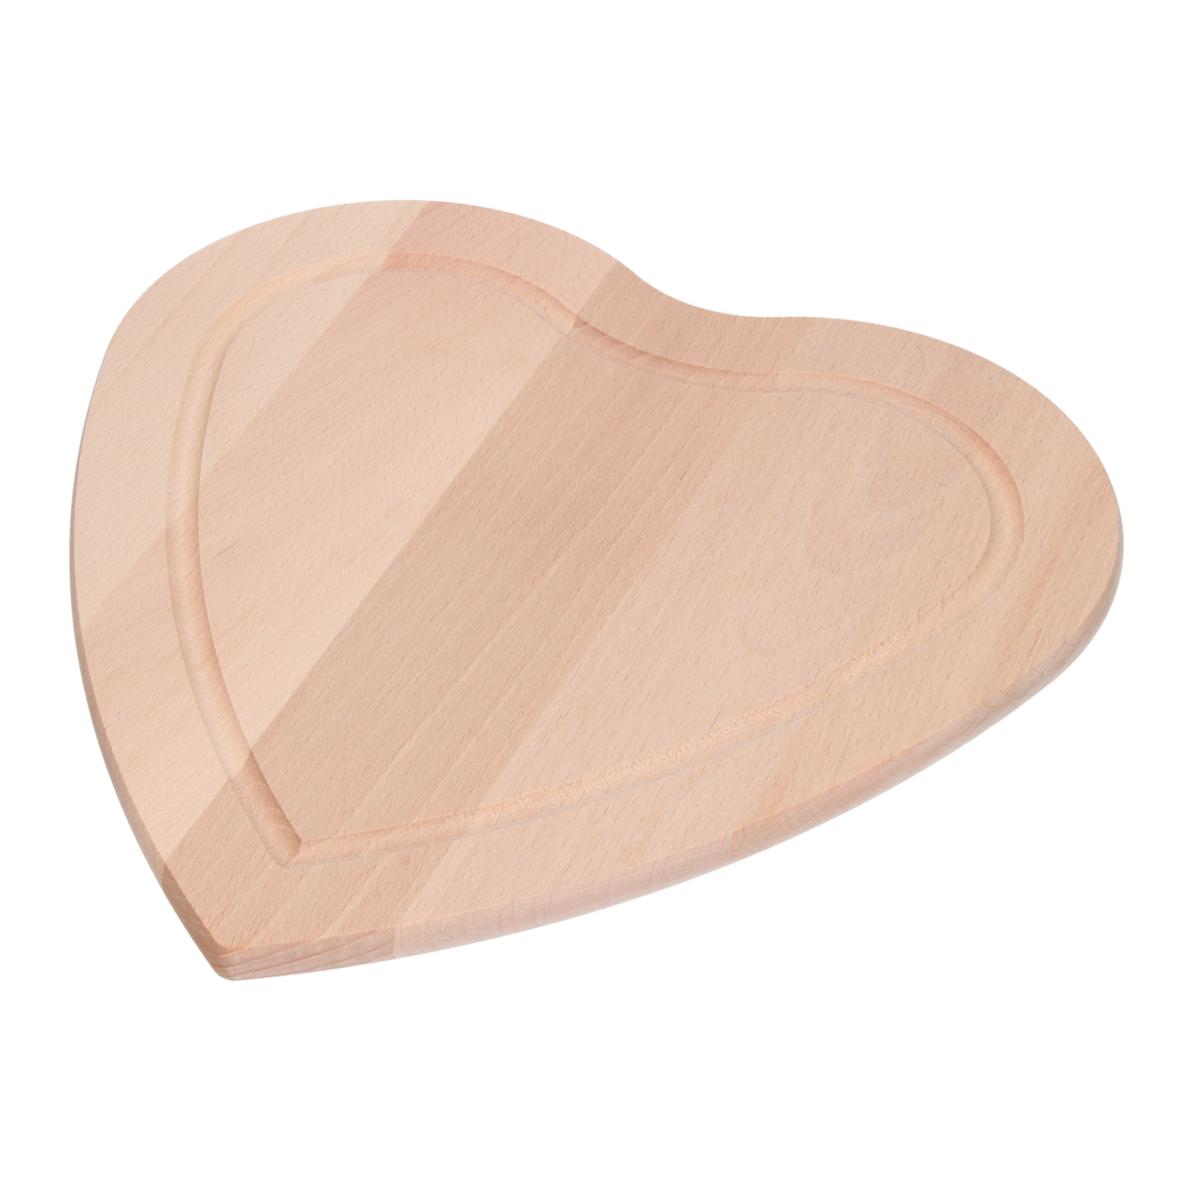 Planche à découper en forme de cœur en bois - Chaumont - Zaprinta France